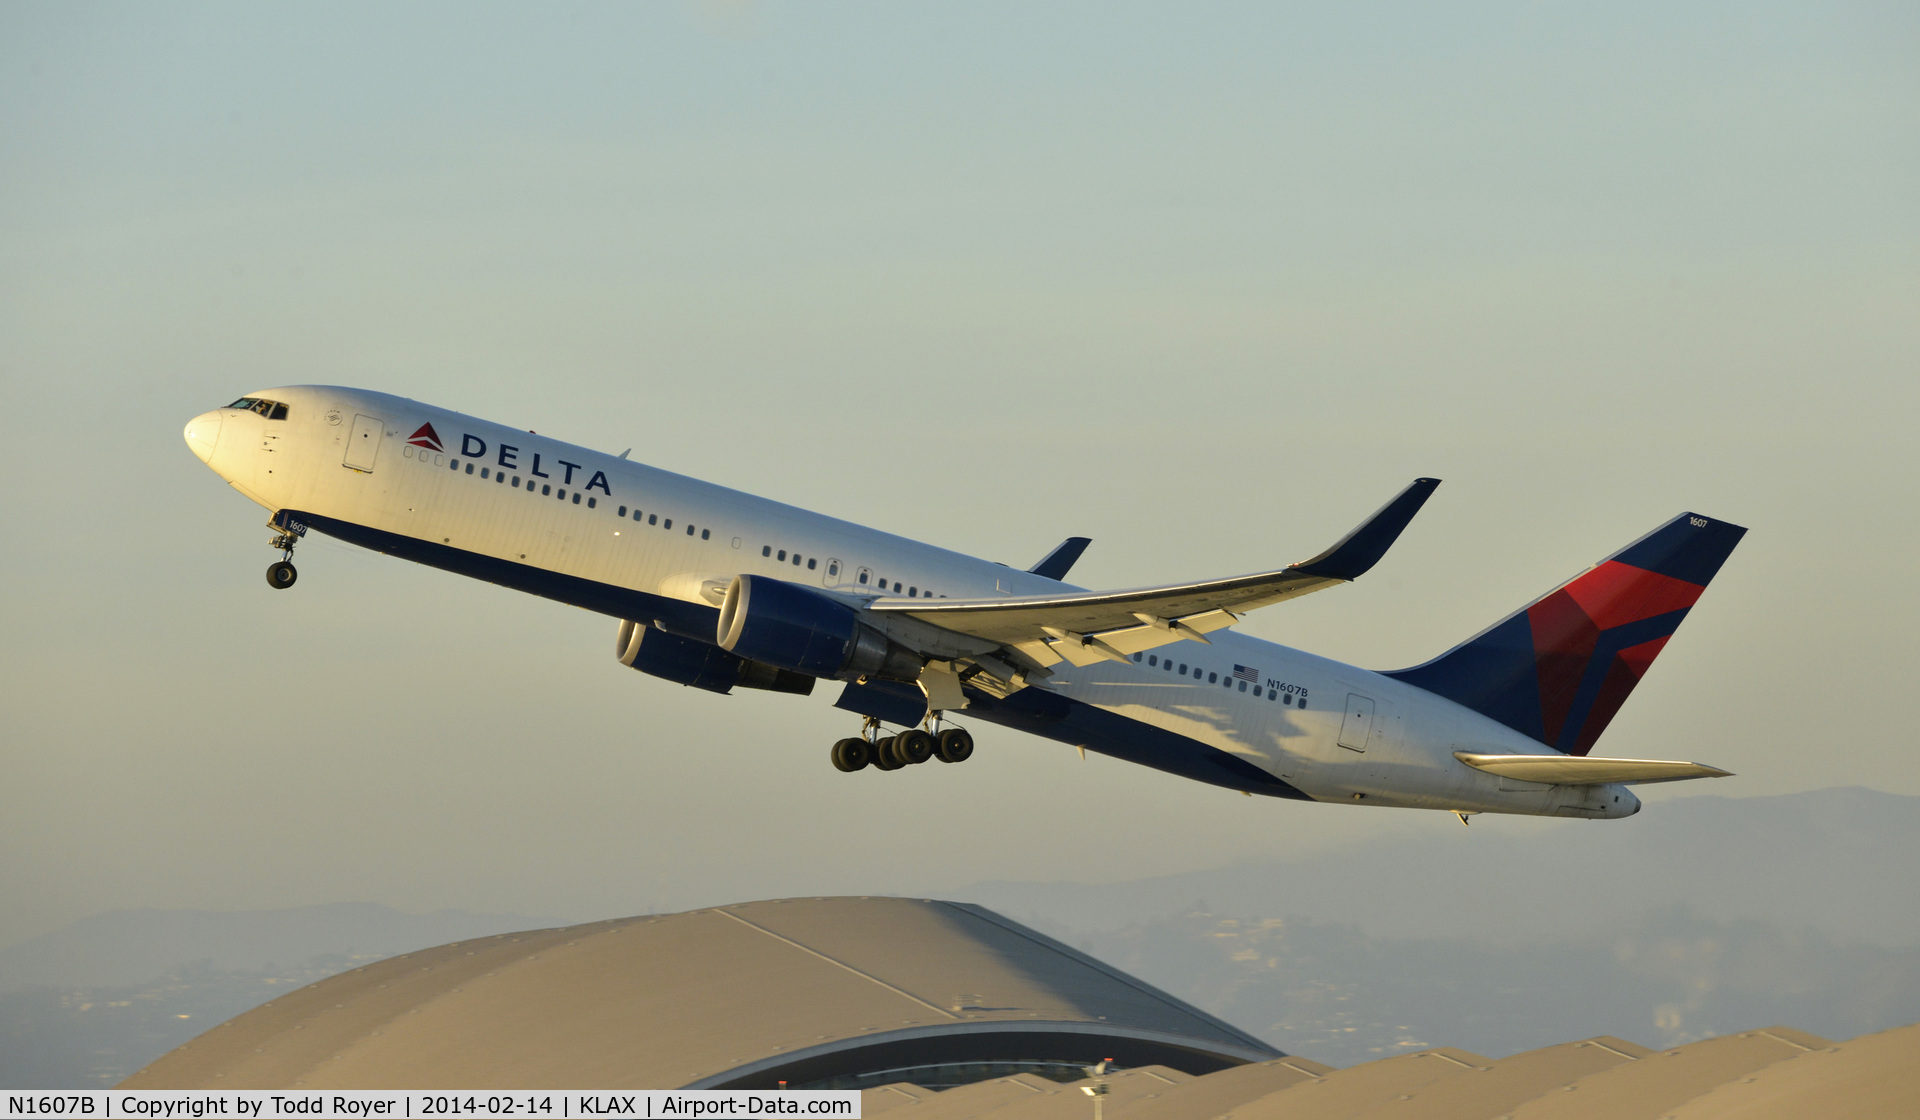 N1607B, 2000 Boeing 767-332 C/N 30388, Departing LAX on 25R